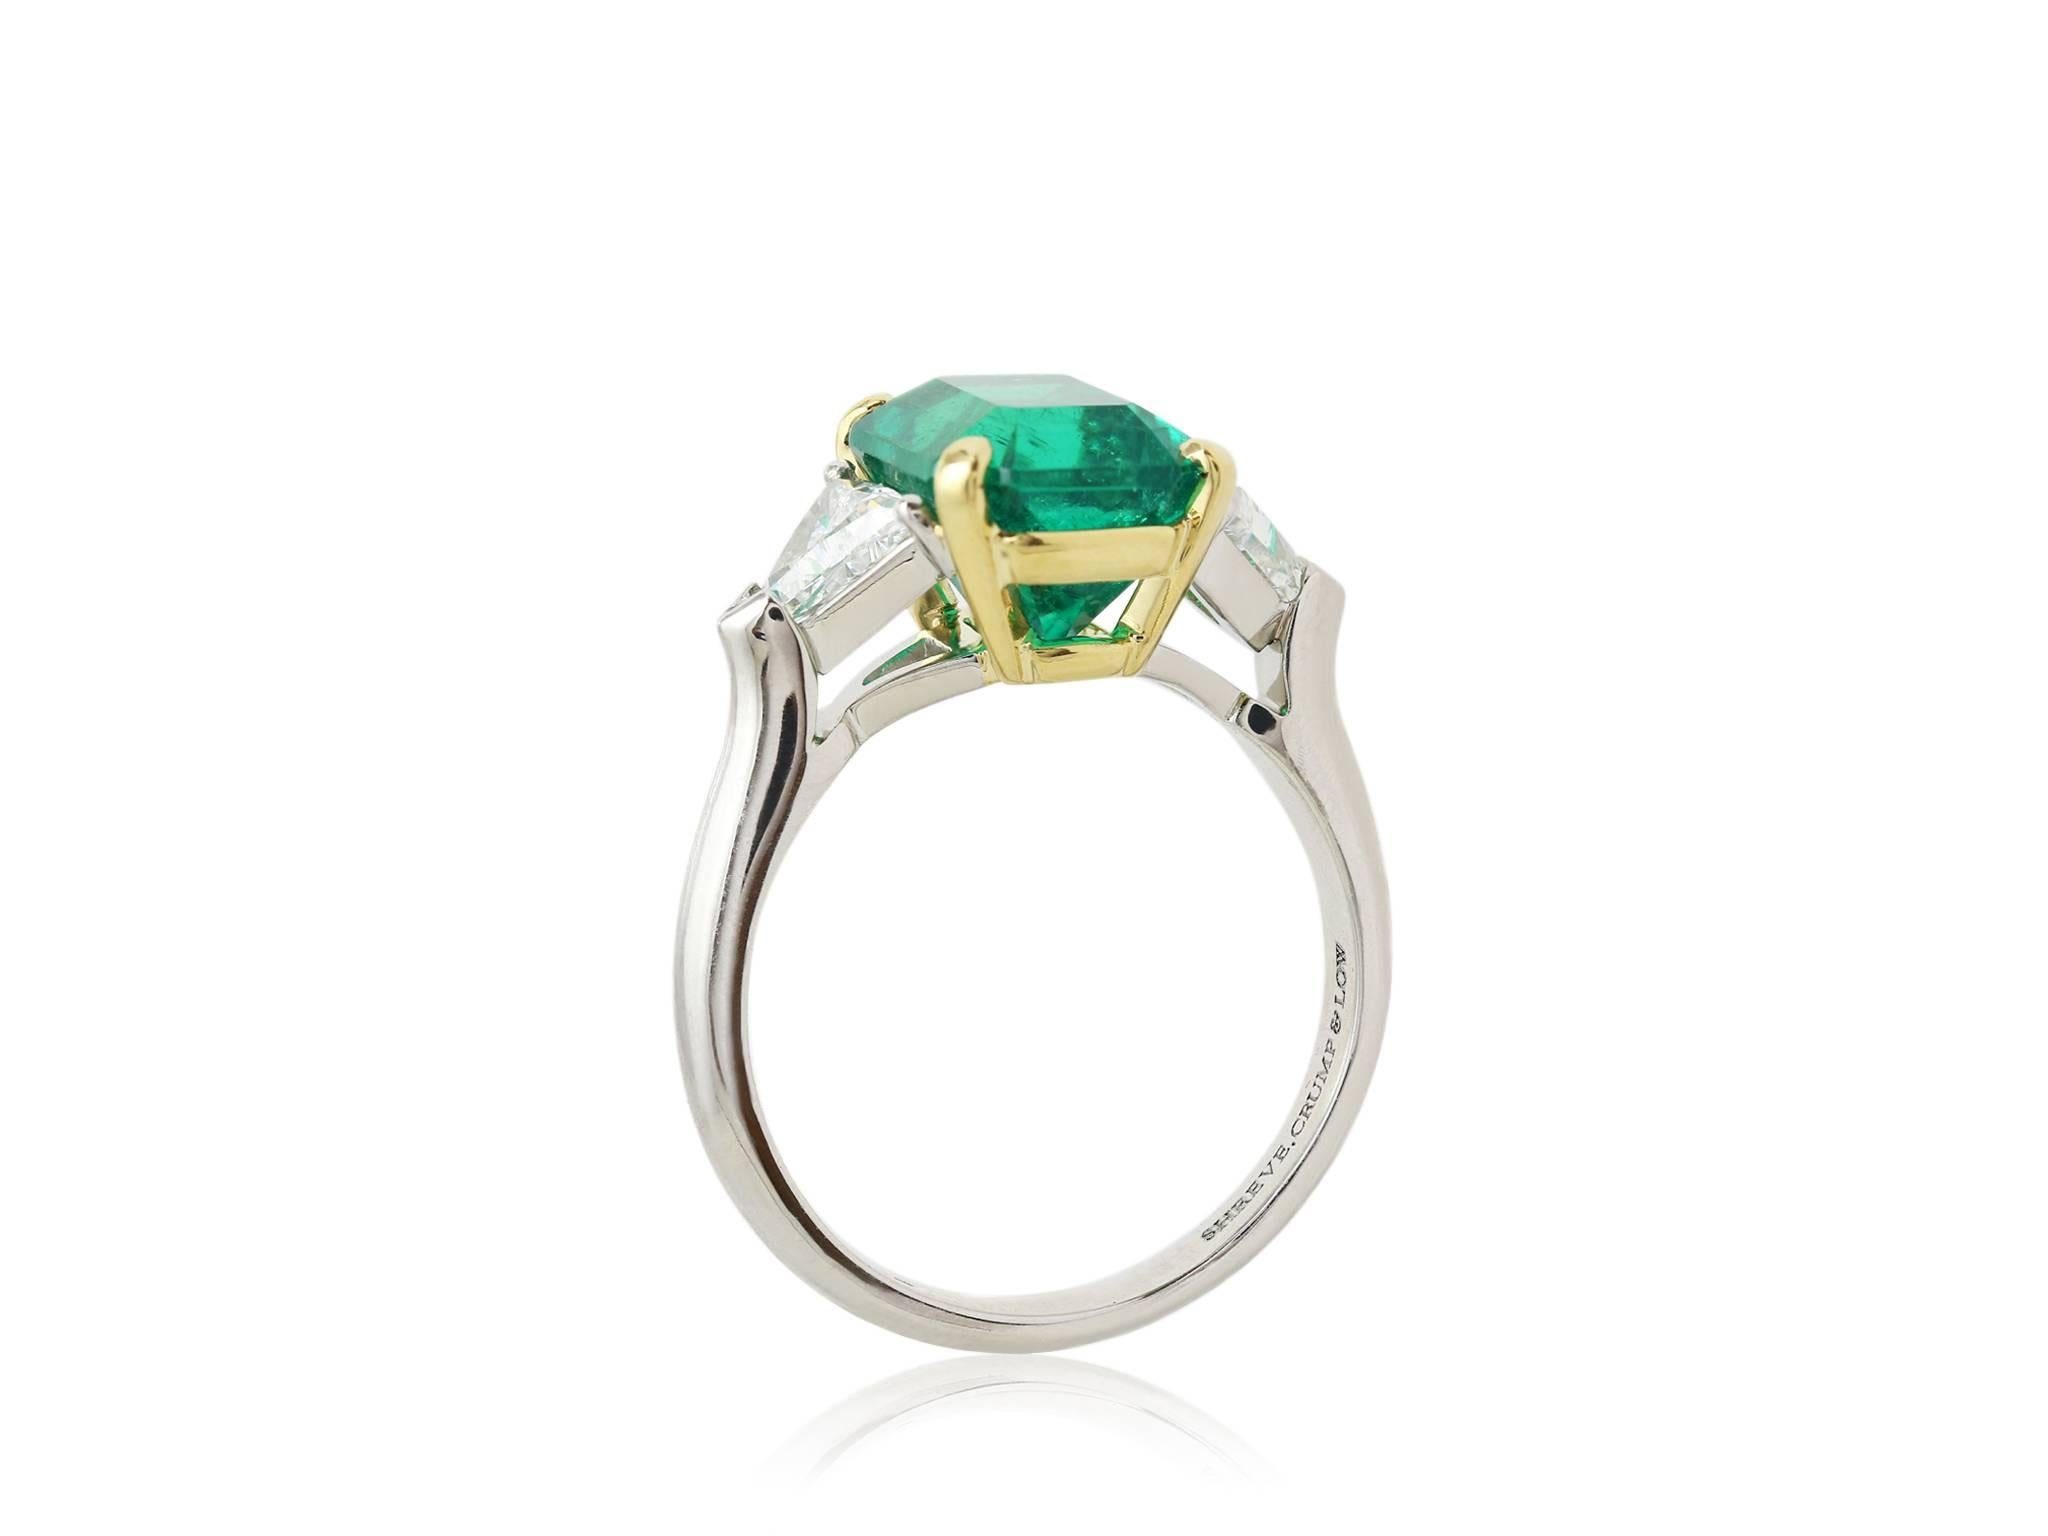 77 carat emerald